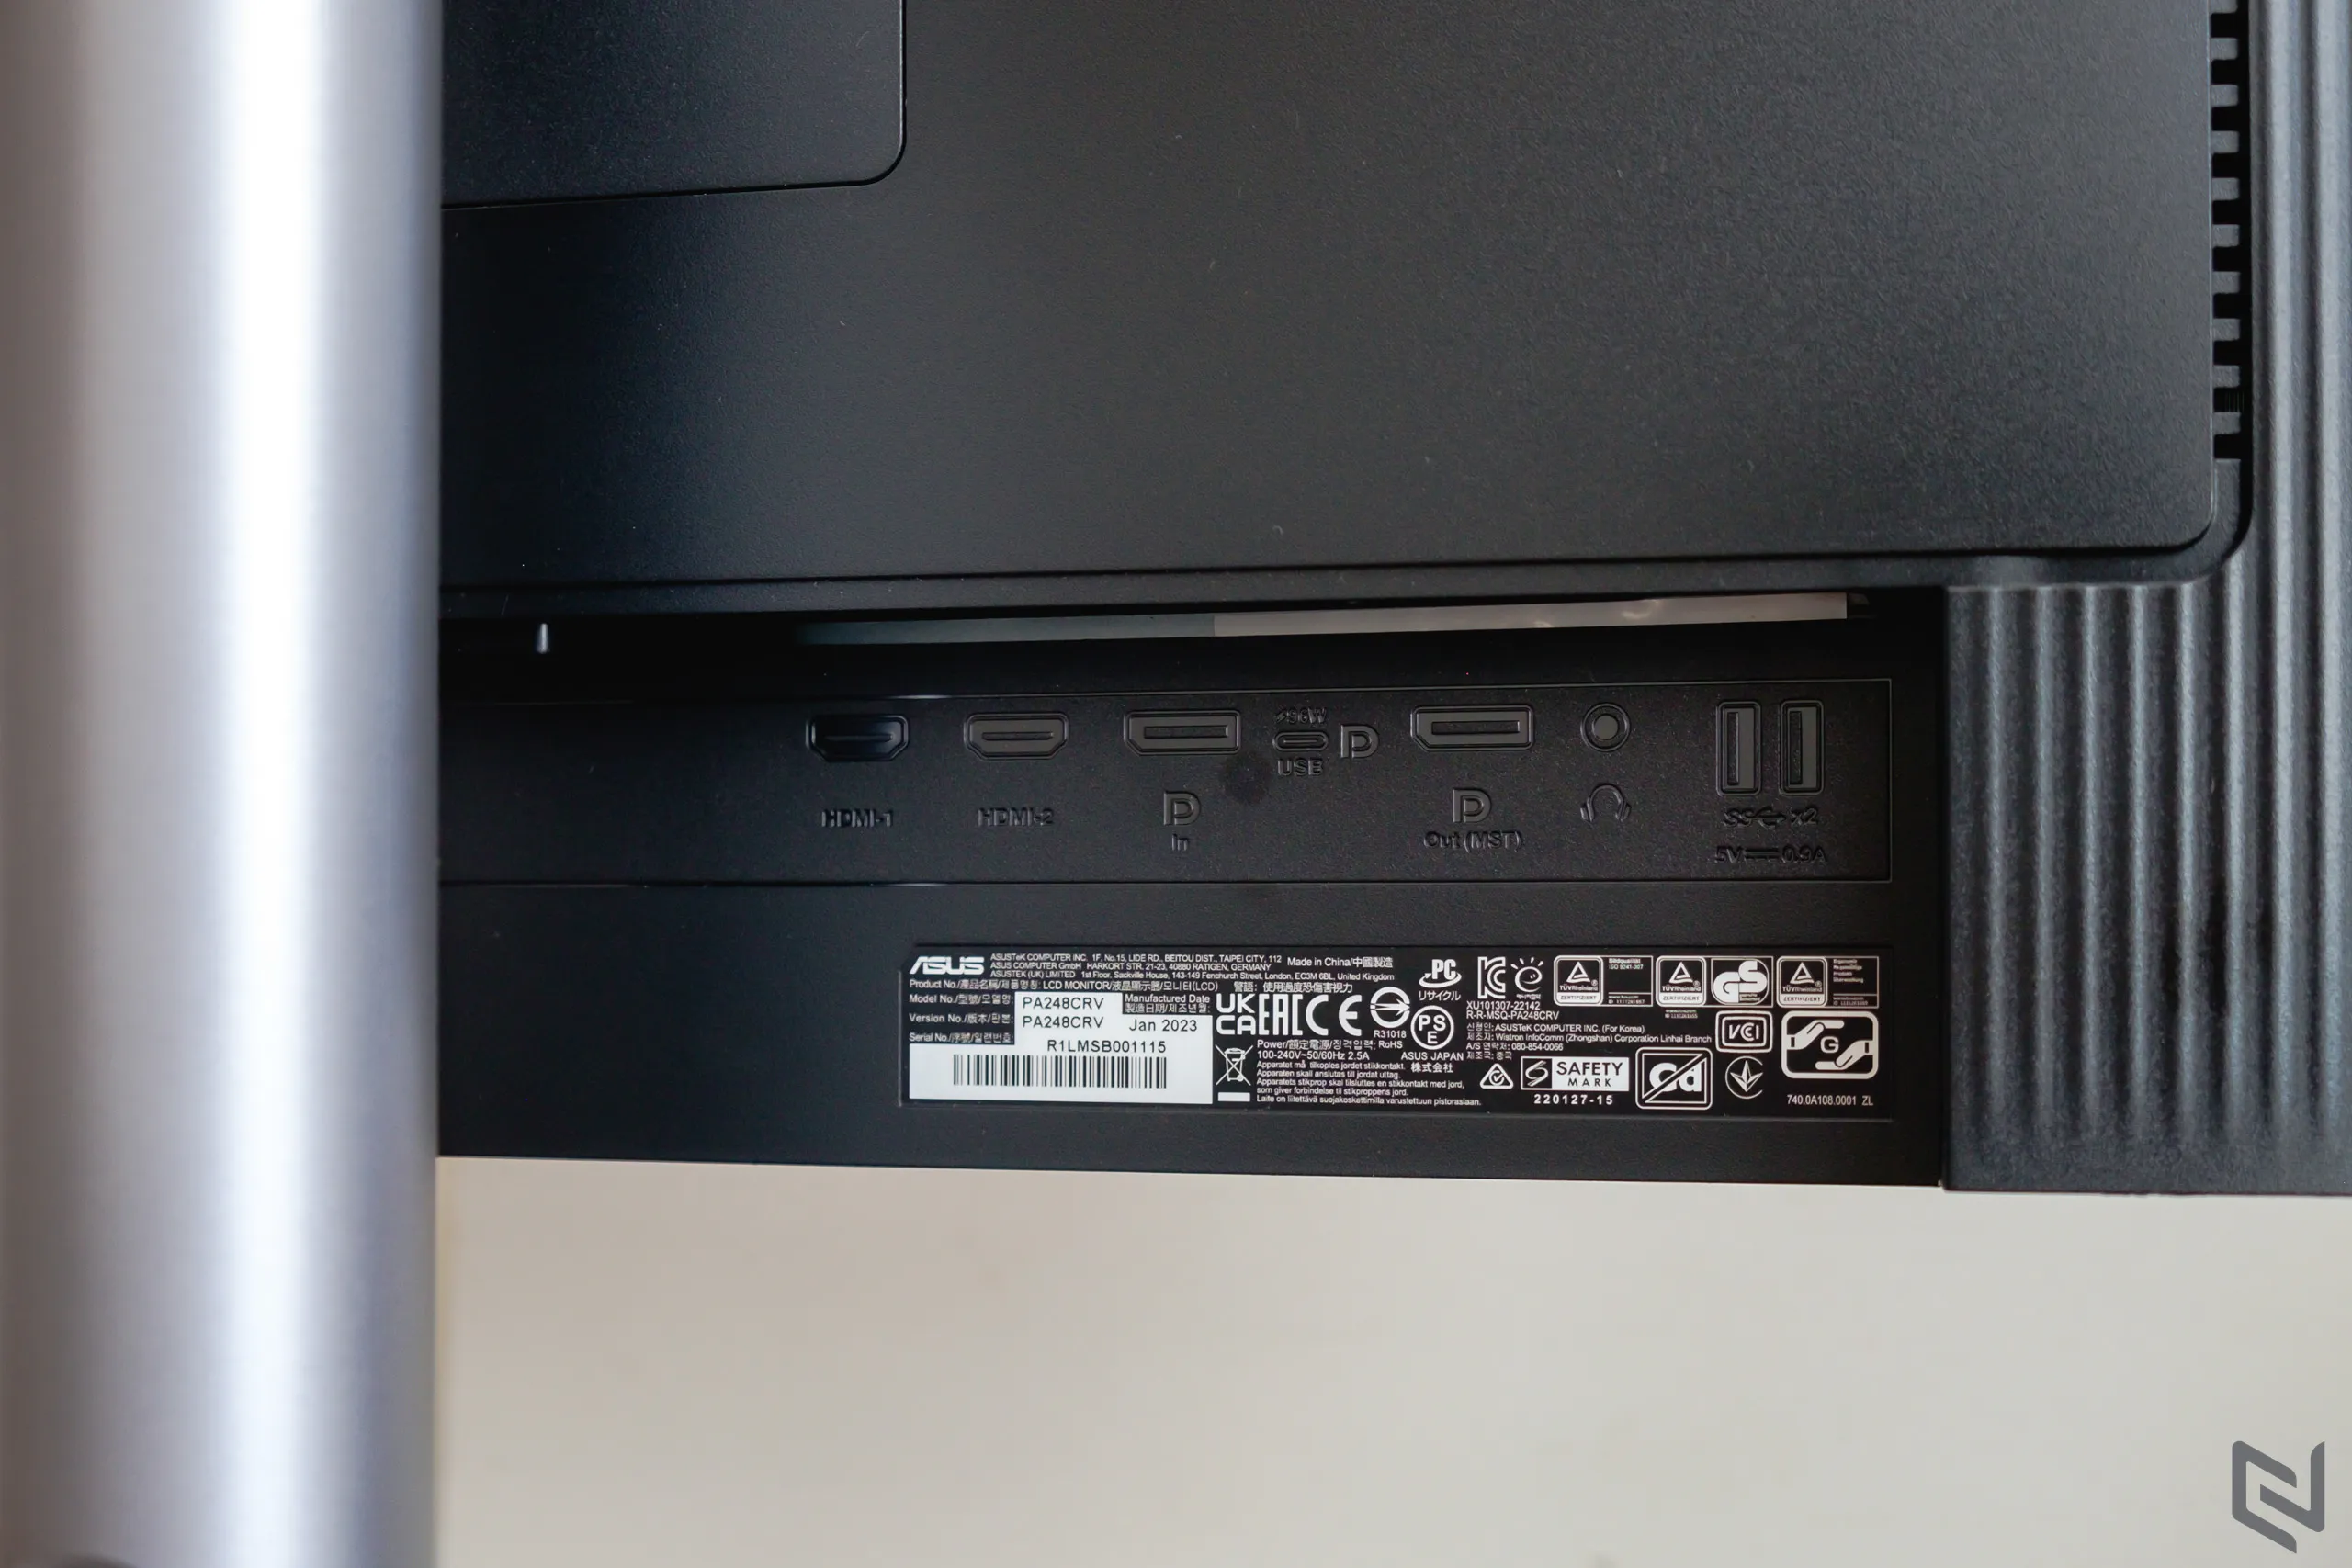 Đánh giá màn hình đồ họa ASUS ProArt PA248CRV: Cổng USB-C cấp nguồn 96W, thiết kế tinh tế và gọn hơn